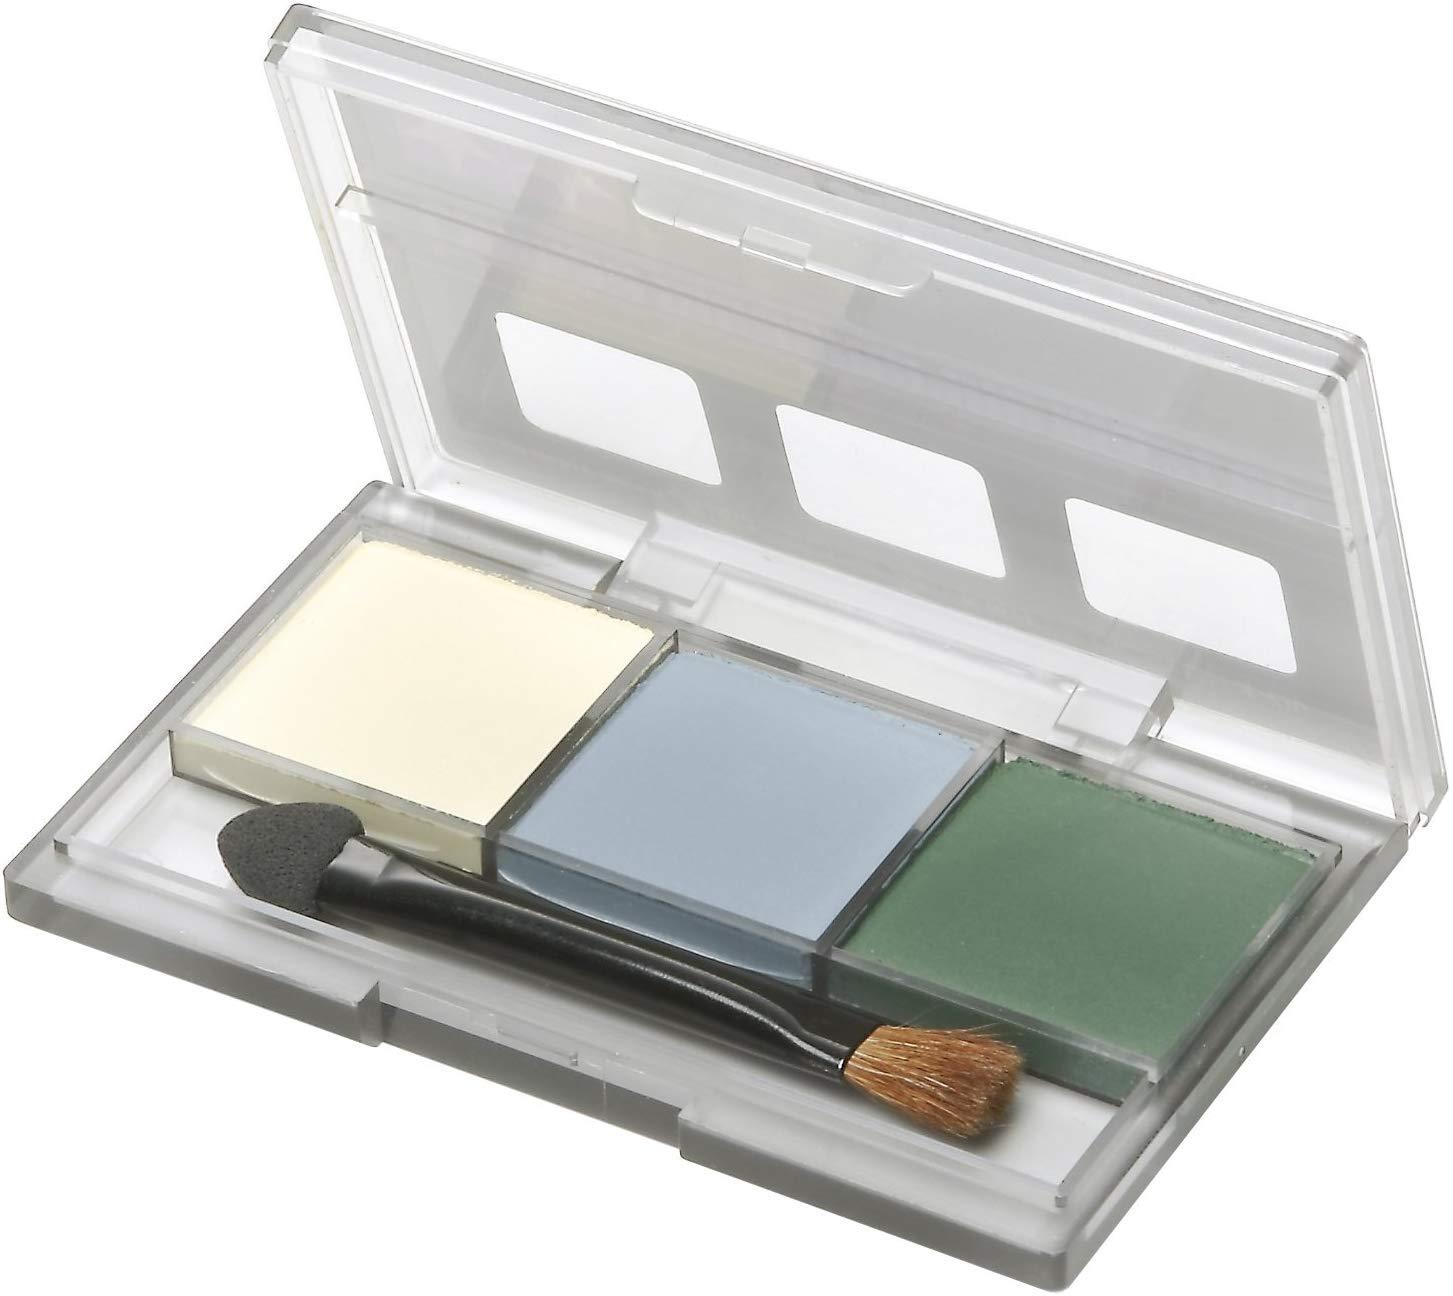 Tamiya Make-up consumable meterial: #87098 Tamiya Weathering Master E set (Yellow, Gray, Green) - SaQra Mart Hobby